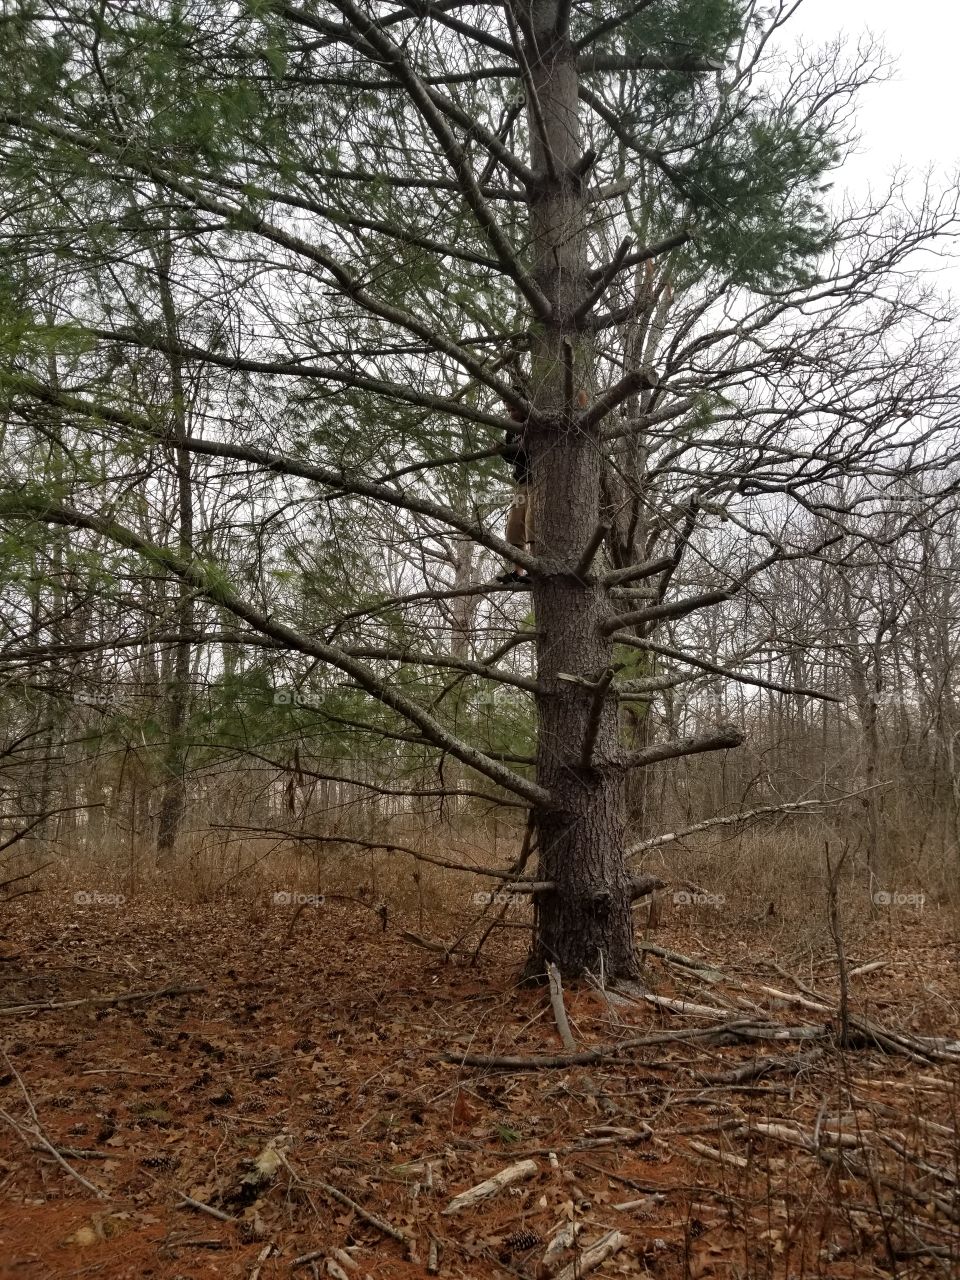 A perfect climbing tree